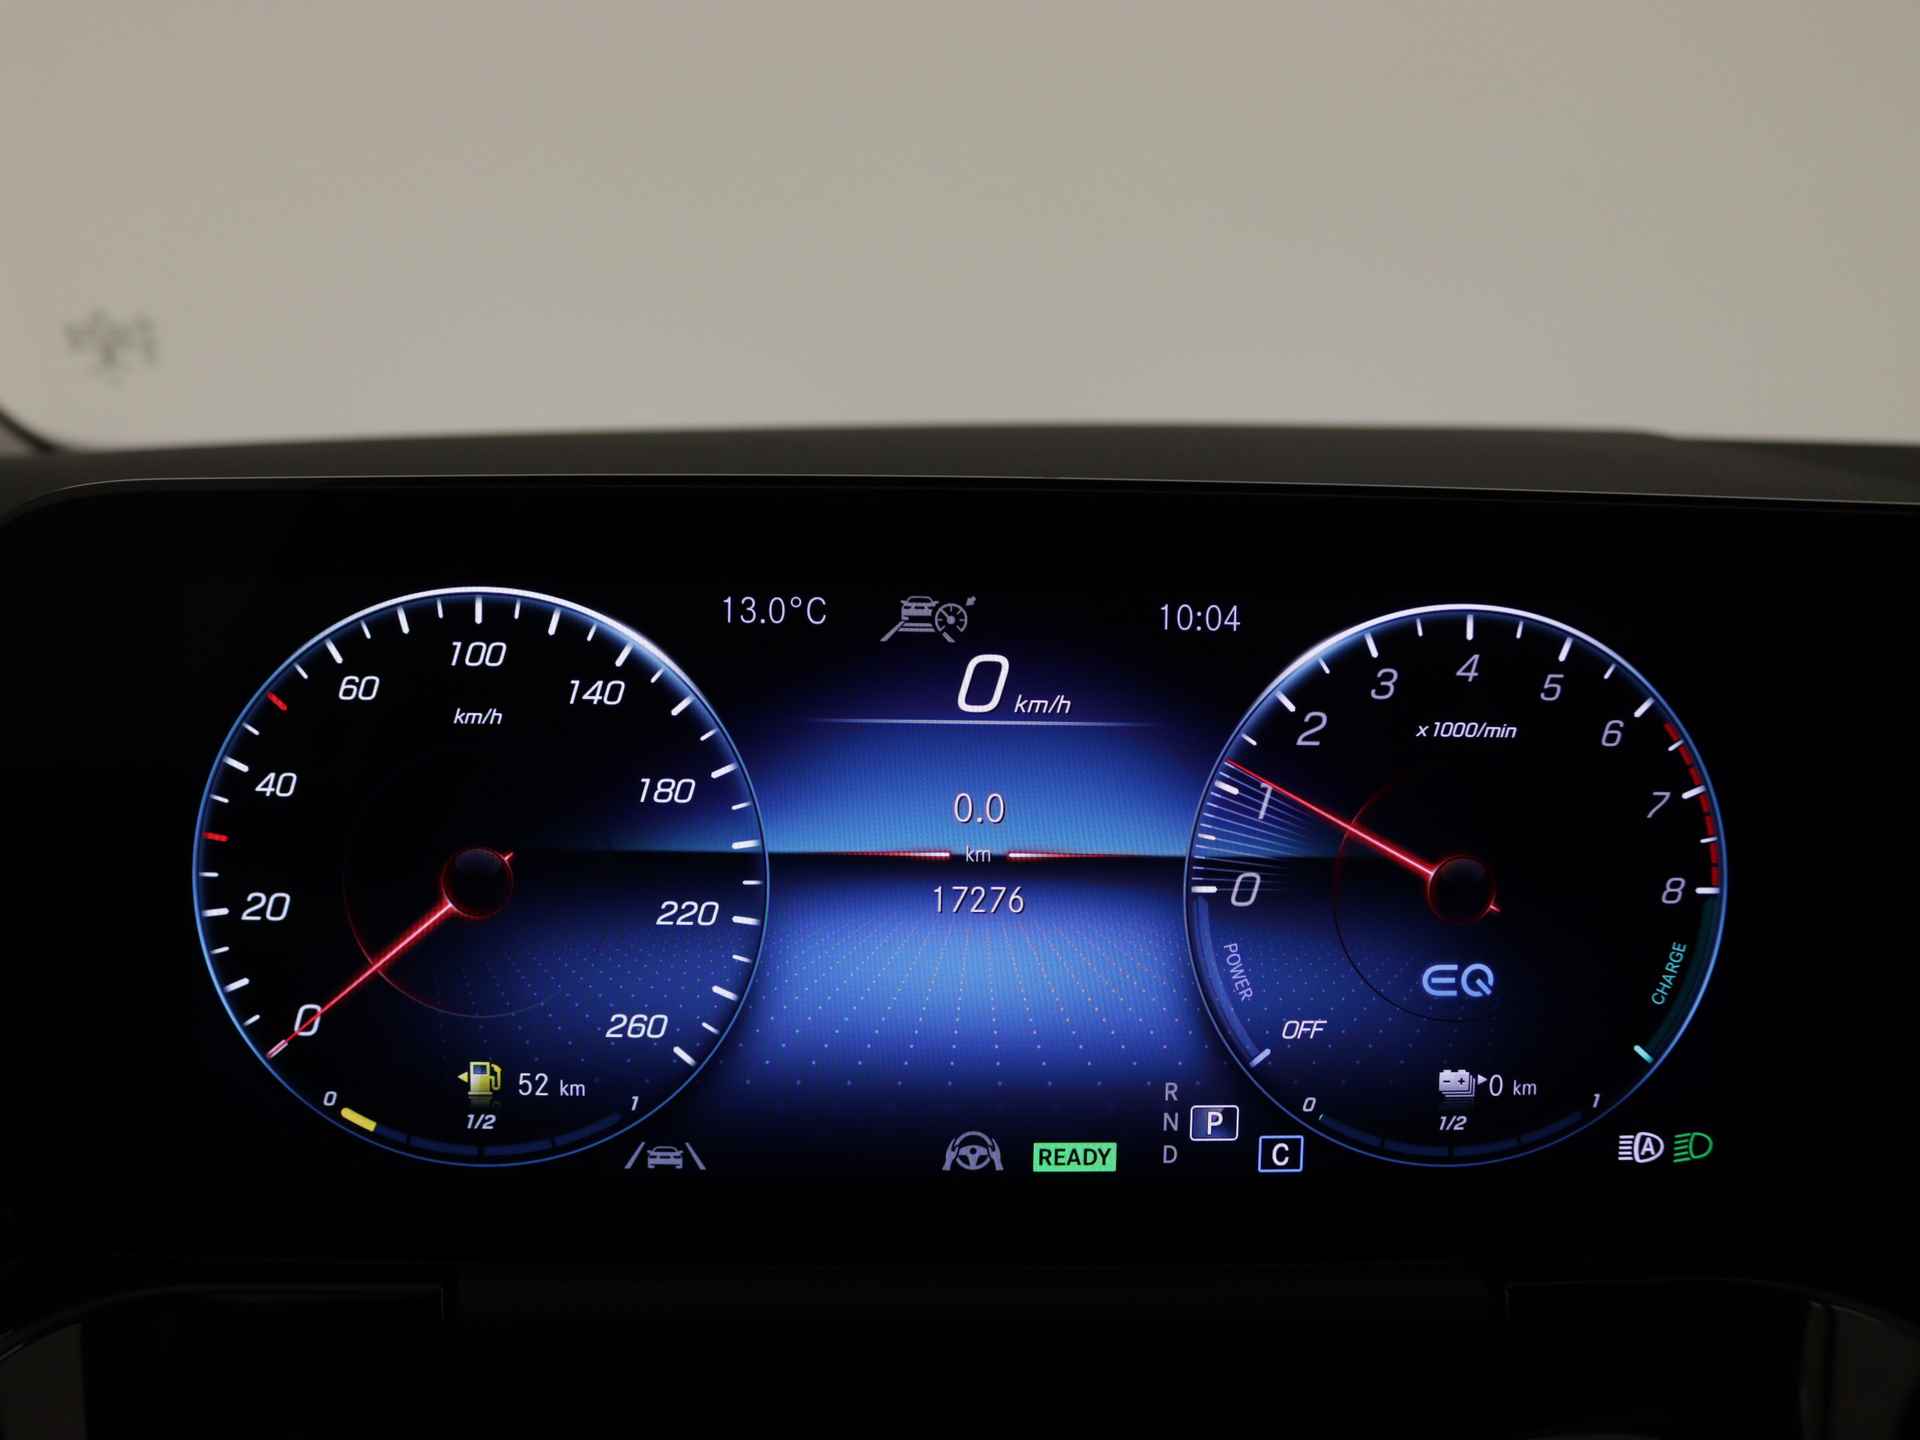 Mercedes-Benz B-Klasse 250 e AMG Line Limited Multispaaks lichtmetalen velgen | MBUX wide screen | Navigatie | Parking support | Inclusief 24 maanden Mercedes-Benz Certified garantie voor Europa. | - 7/45